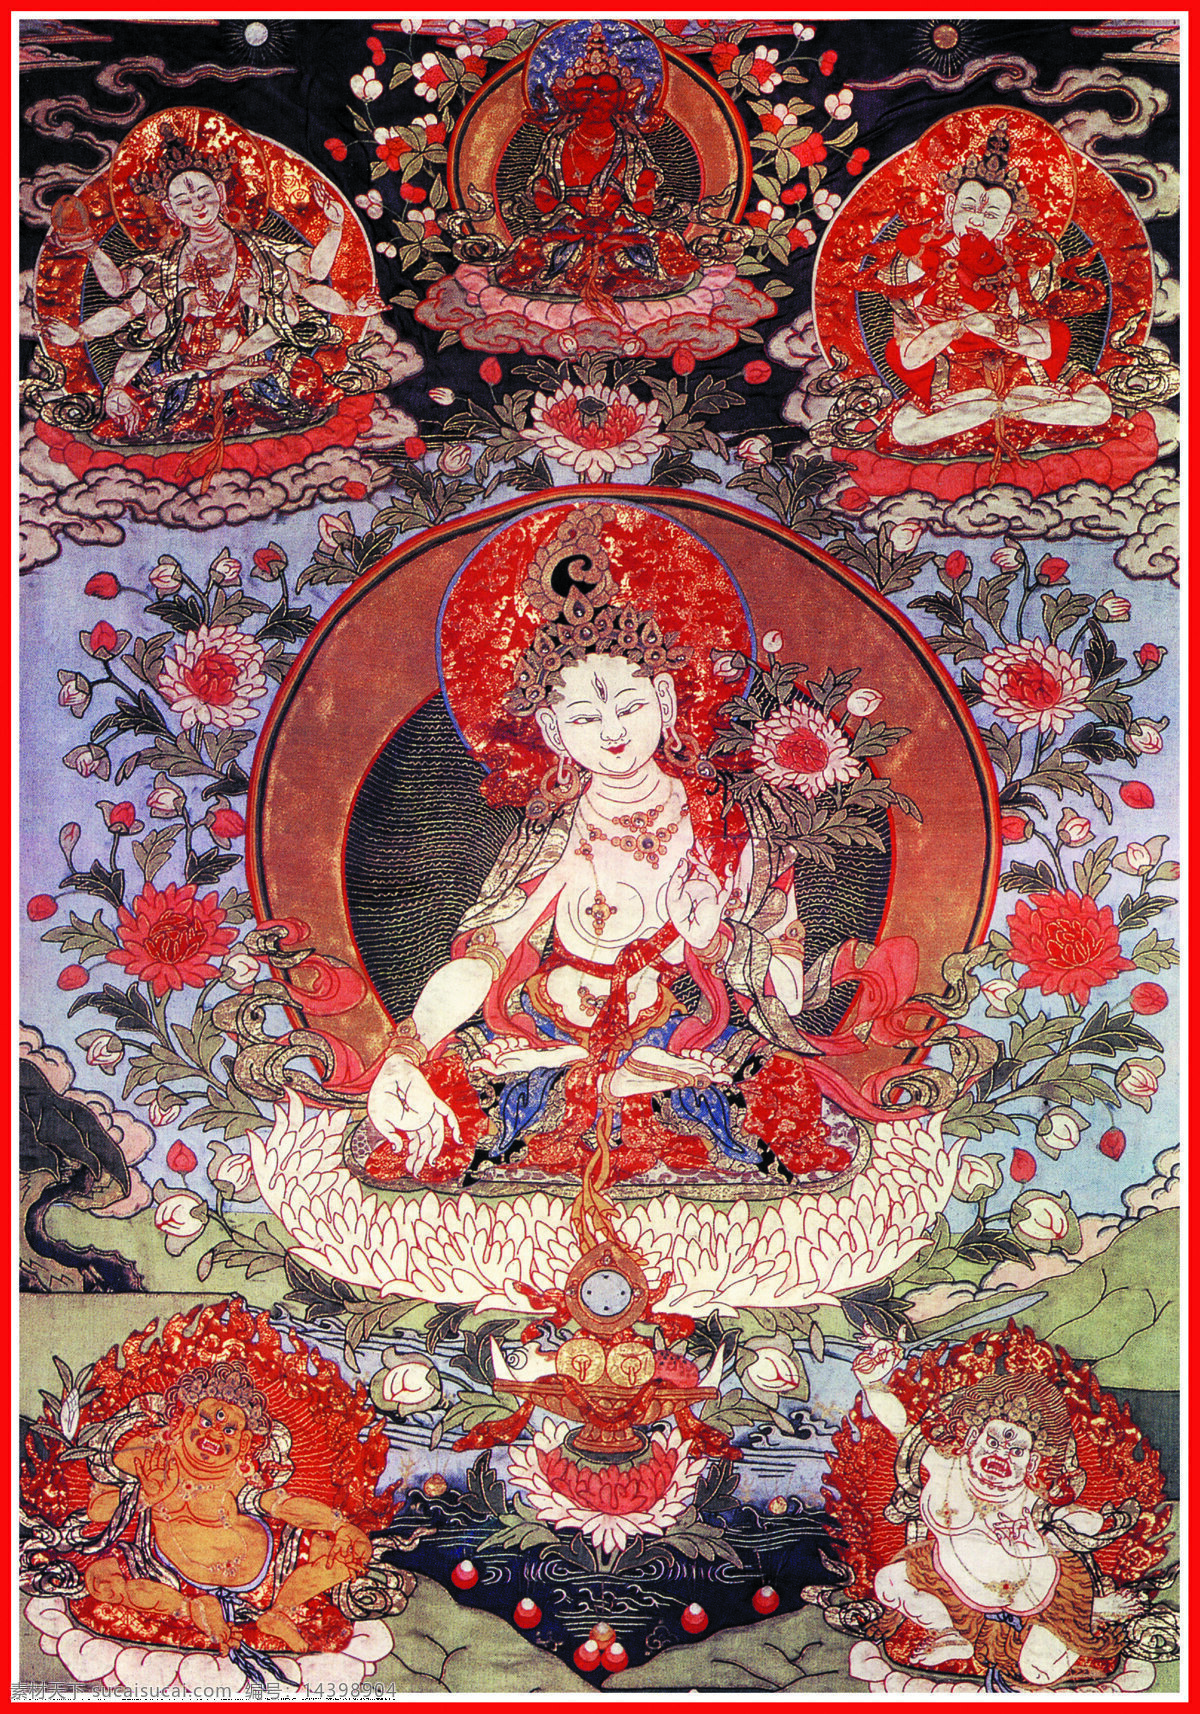 西藏 日喀则 唐卡 佛教 佛法 佛经 佛龛 唐卡全大 藏族文化16 藏族文化 宗教信仰 文化艺术